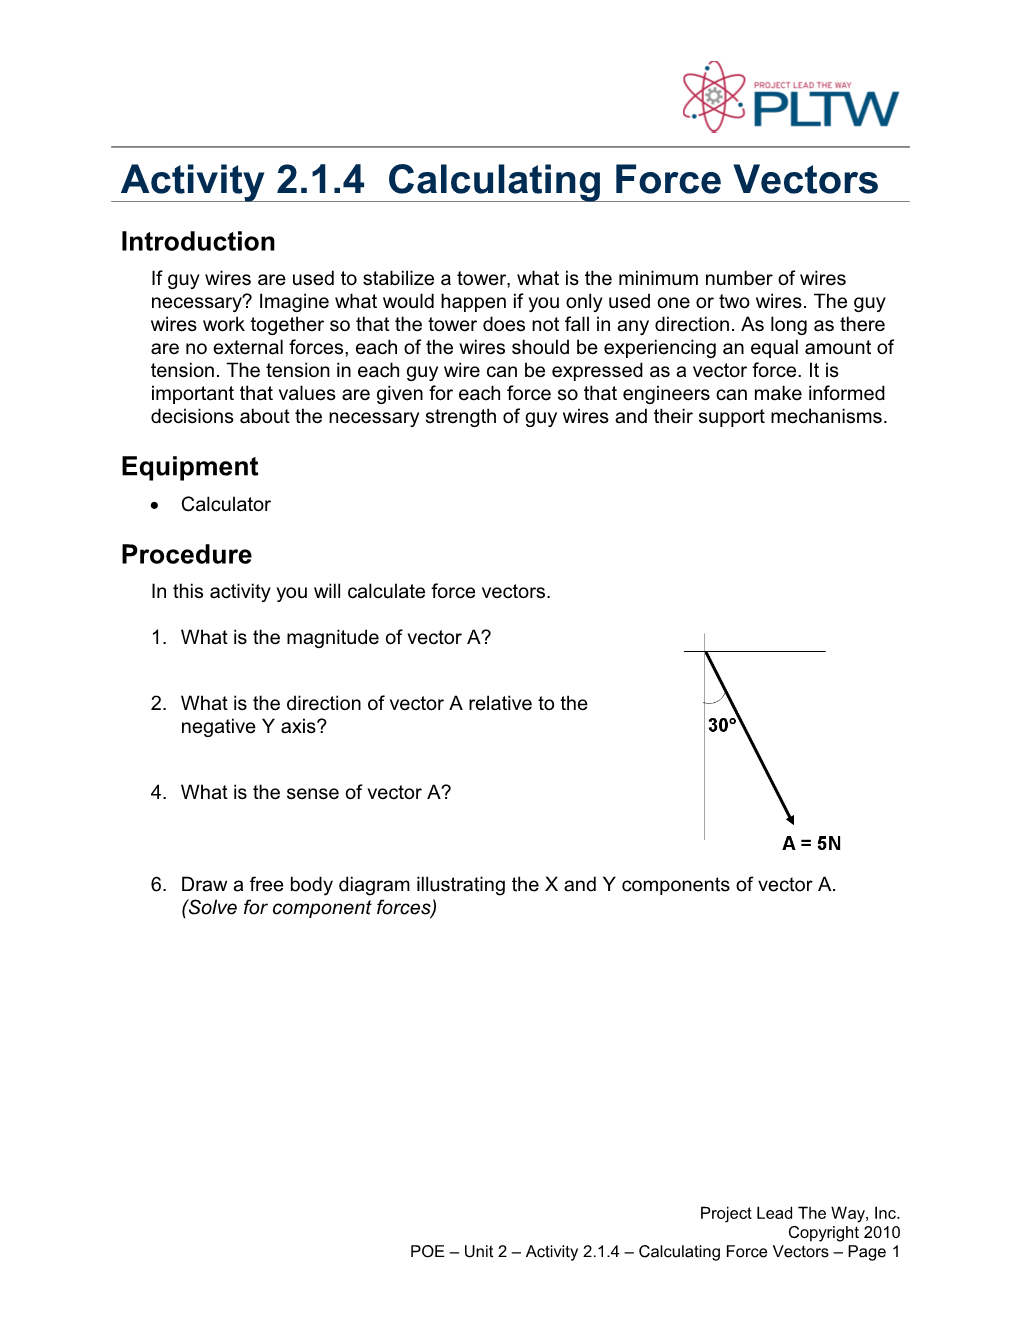 Activity 2.1.4 Calculating Force Vectors